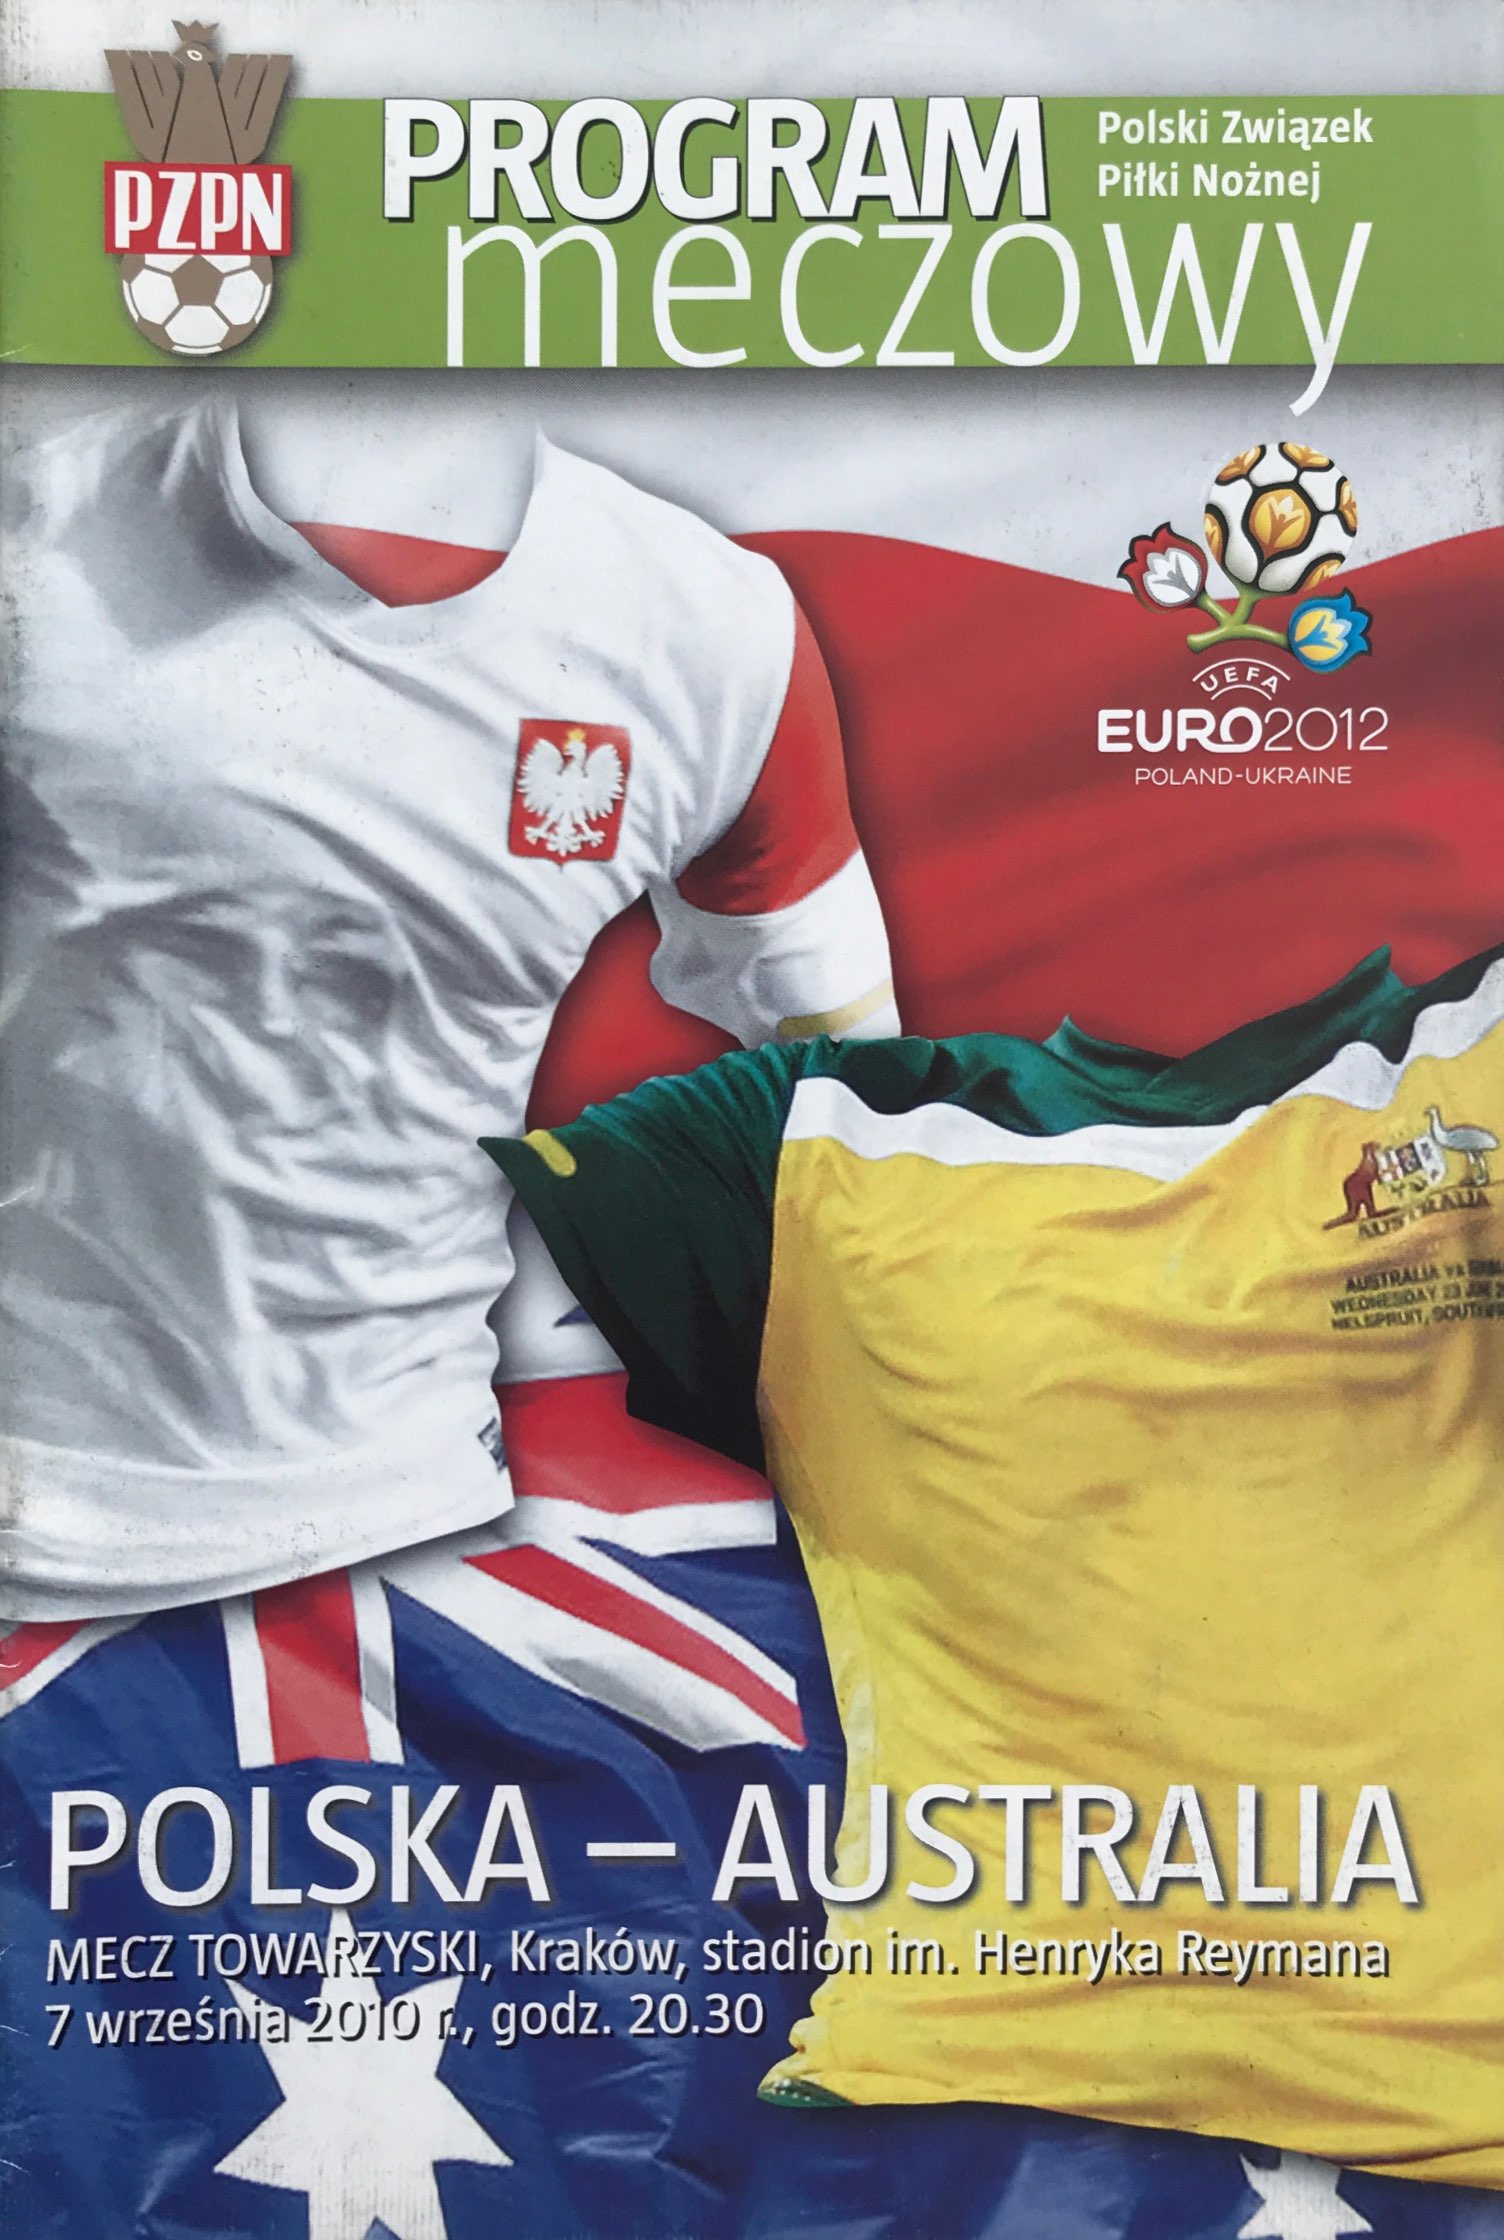 Program meczowy Polska - Australia 1:2 (07.09.2010)